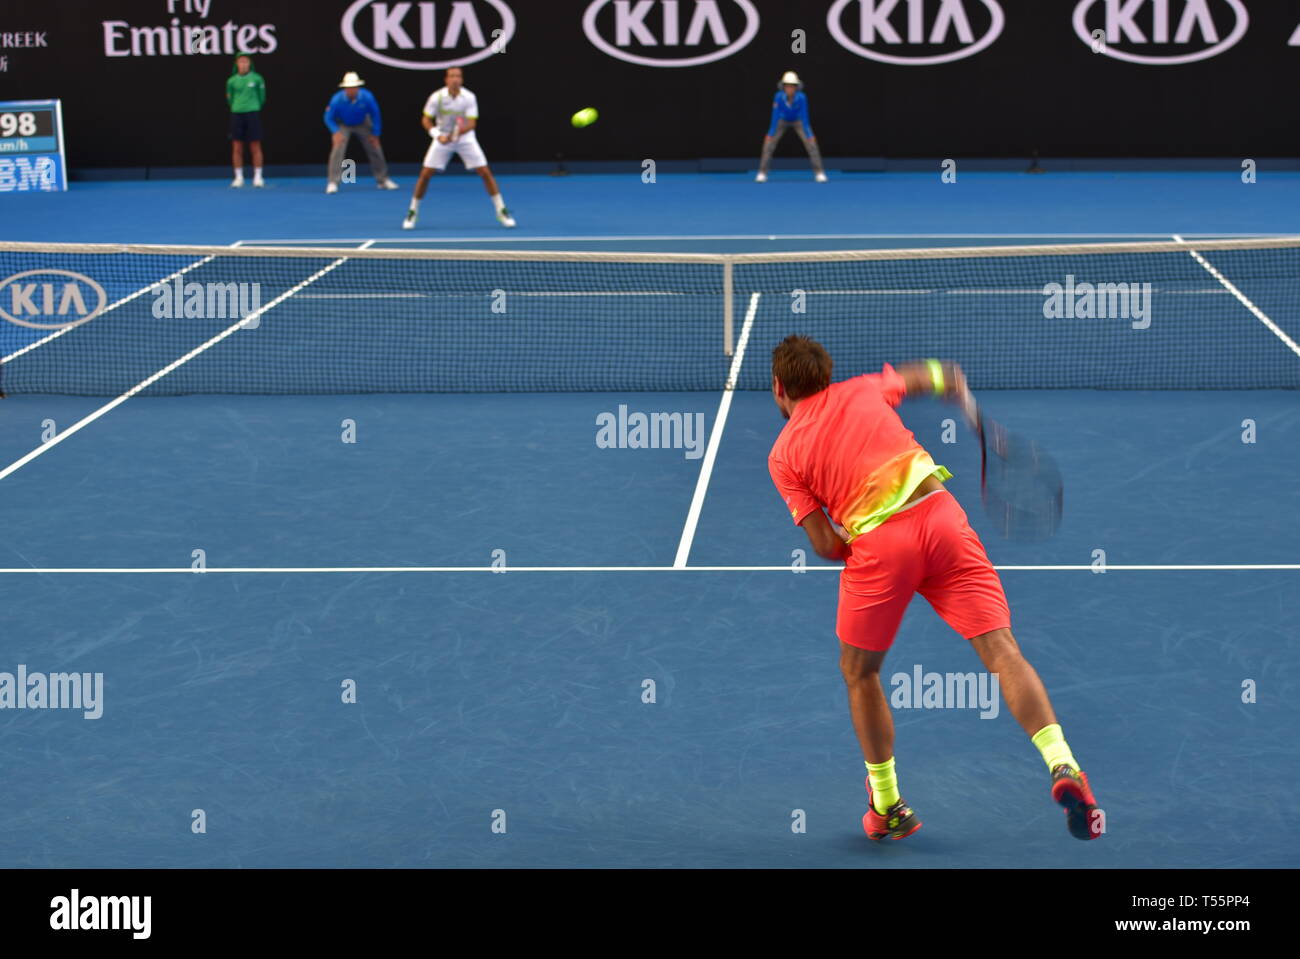 Stan Wawrinka, ein Schweizer Profi-Tennisspieler, spielte bei den Australian Open 2016 im australischen Melbourne Stockfoto